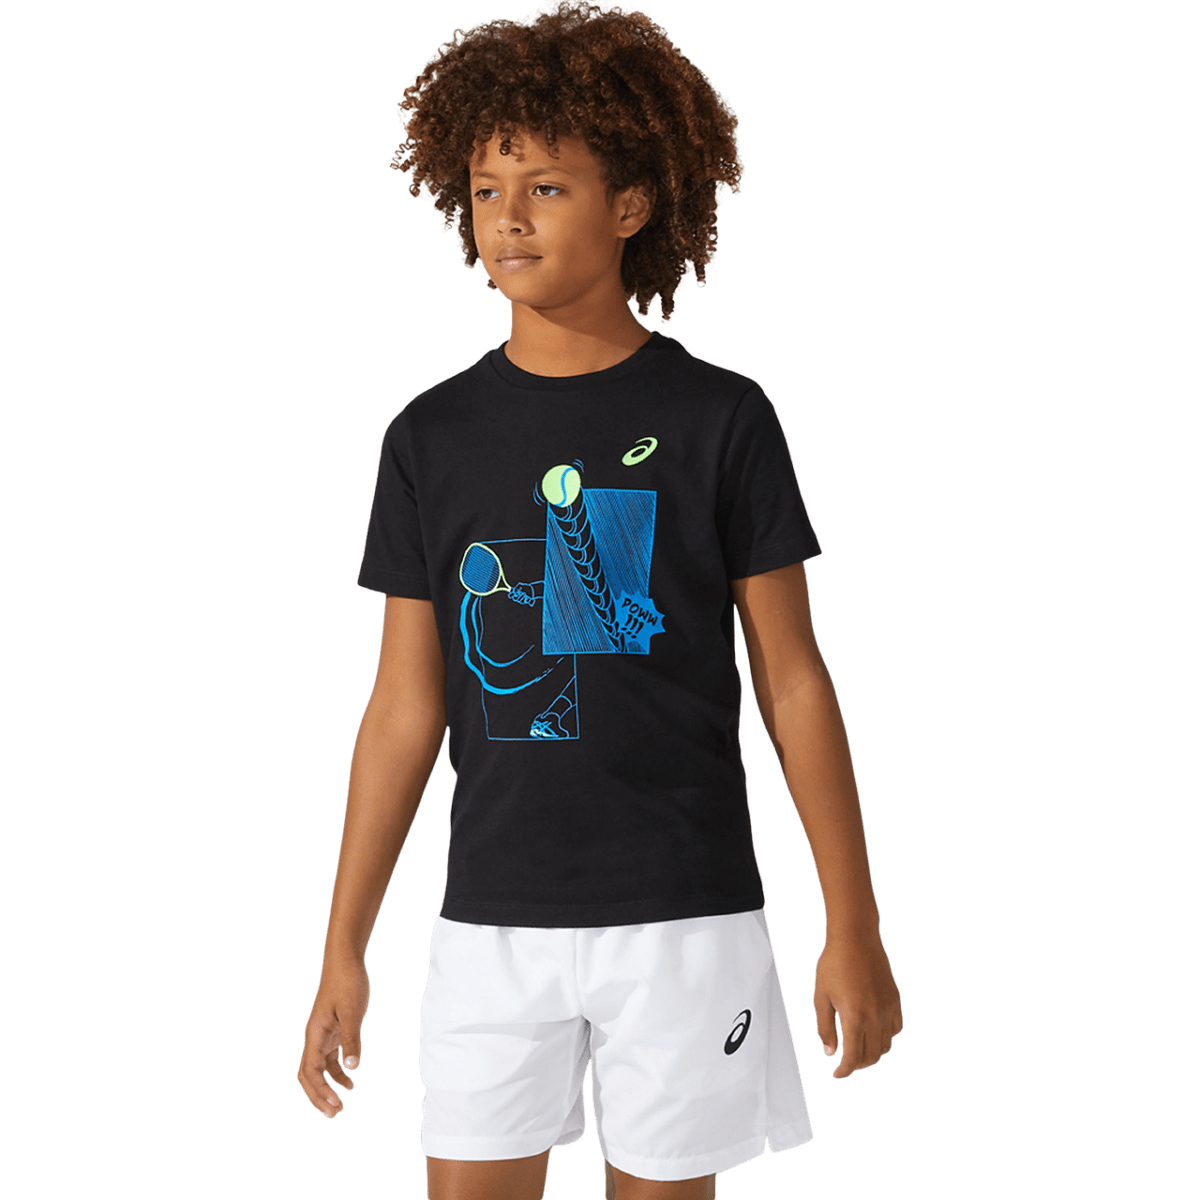 Laste treeningsärk Asics Tennis Tee B 2021 (Performance Black)